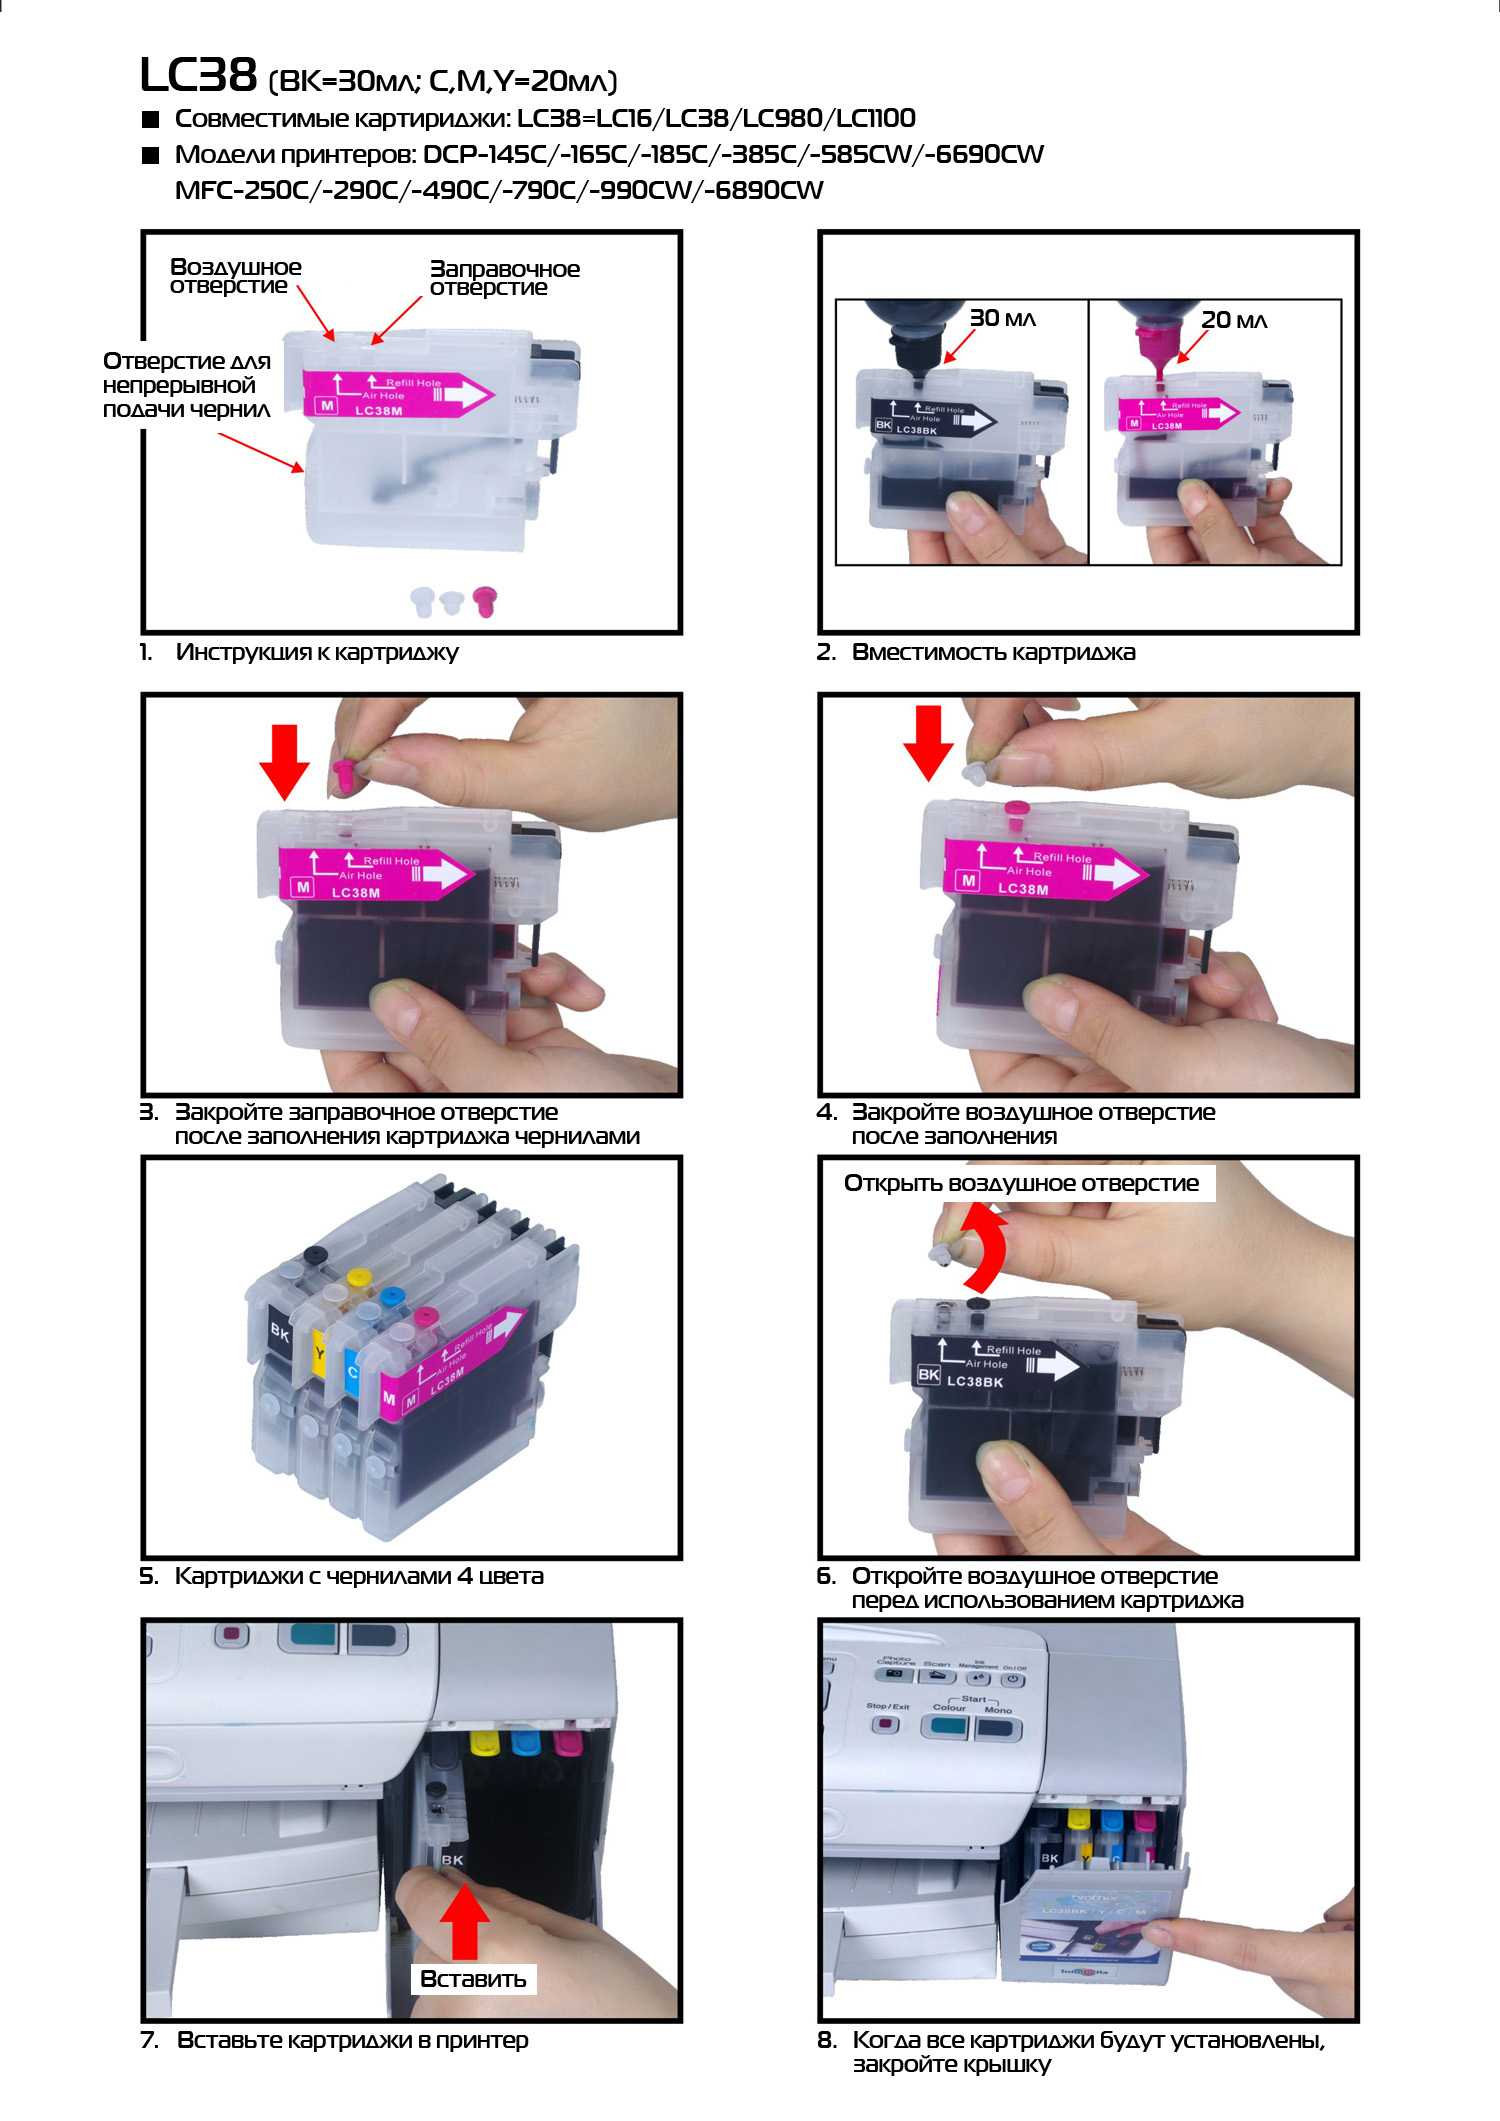 Инструкция, как правильно заправить картридж для принтера в домашних условиях самому